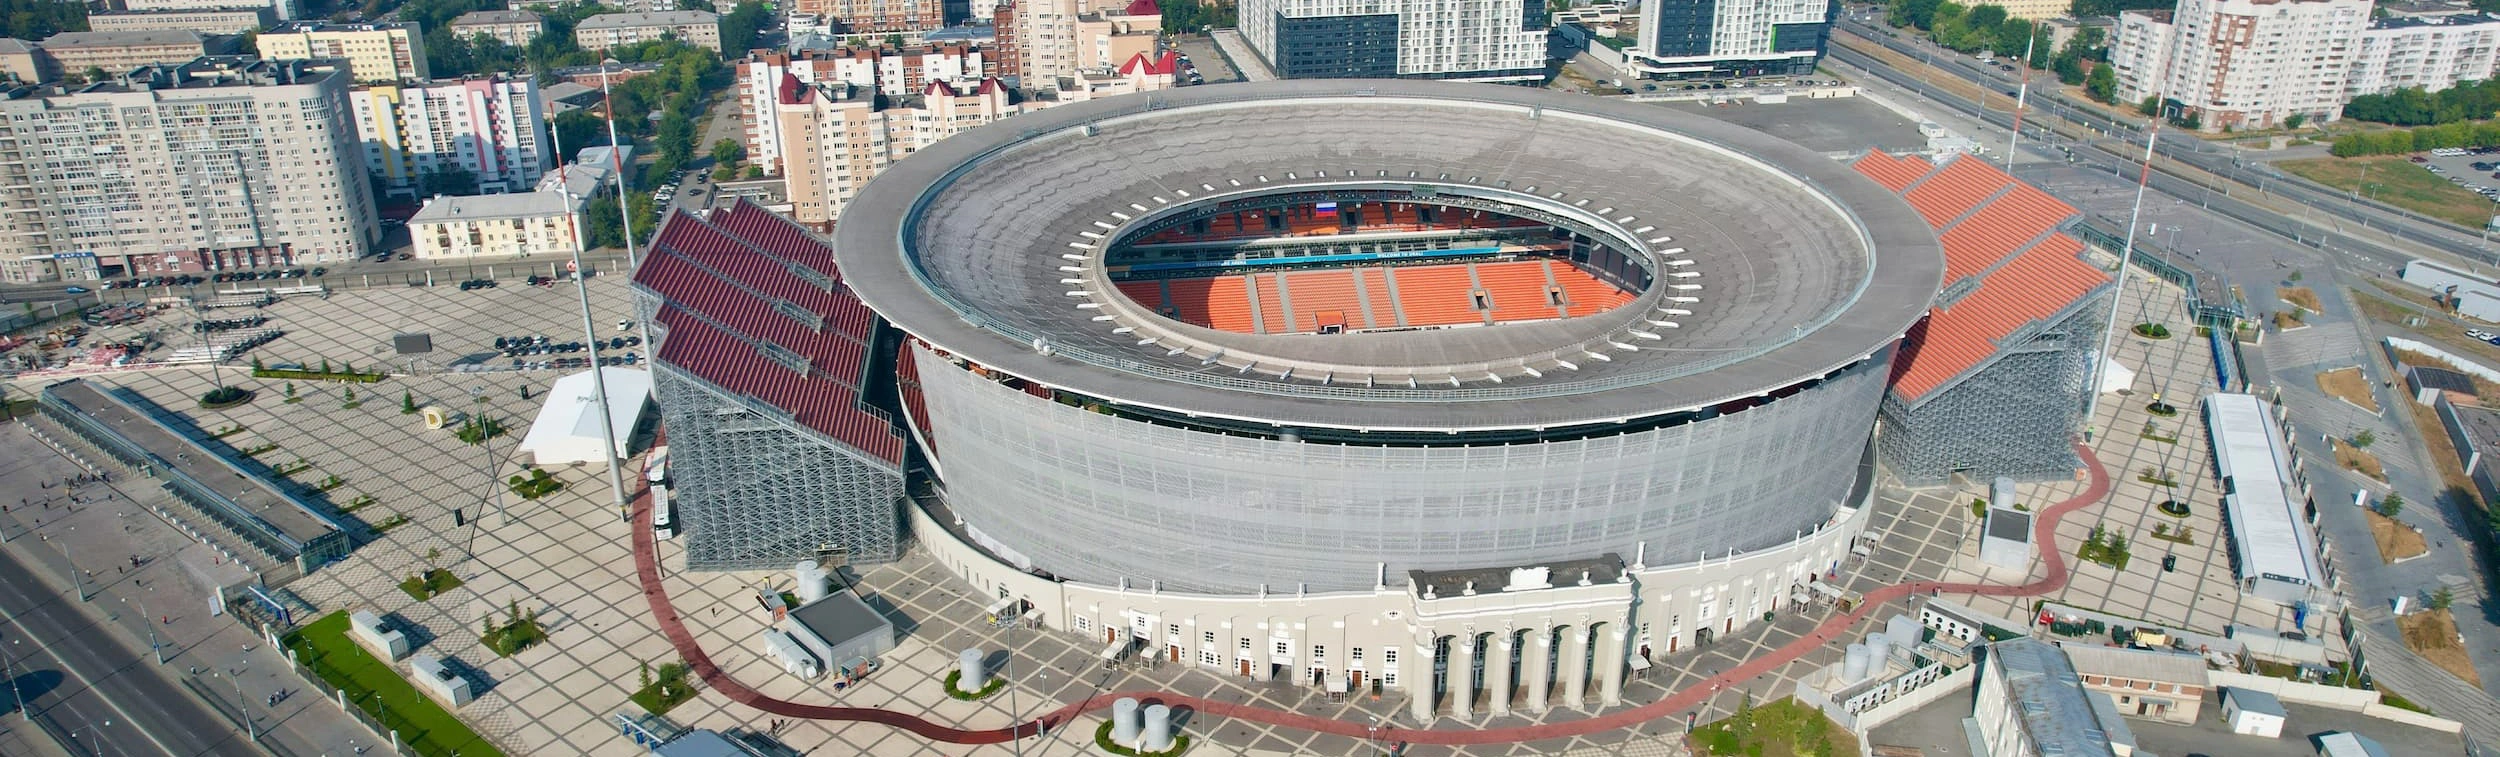 Откройте для себя историю и красоту стадиона «Екатеринбург Арена» в уникальной экскурсии!